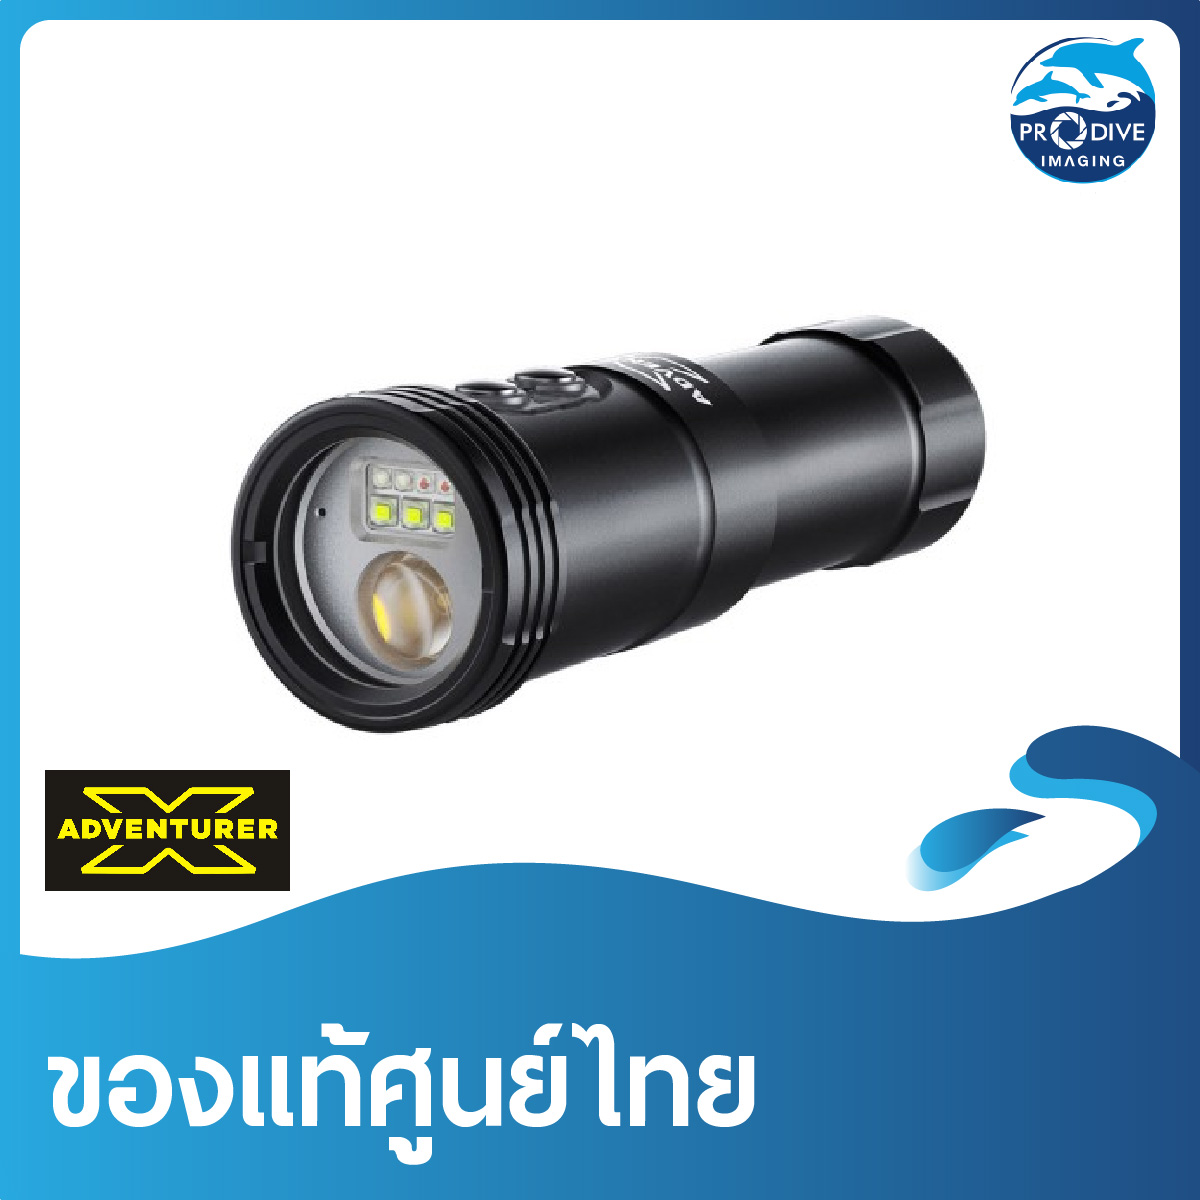 ไฟฉายใต้น้ำ 4 function ในกระบอกเดียว  X-Adventurer M2500-WSRBA 4in1 Smart Focus Video Light